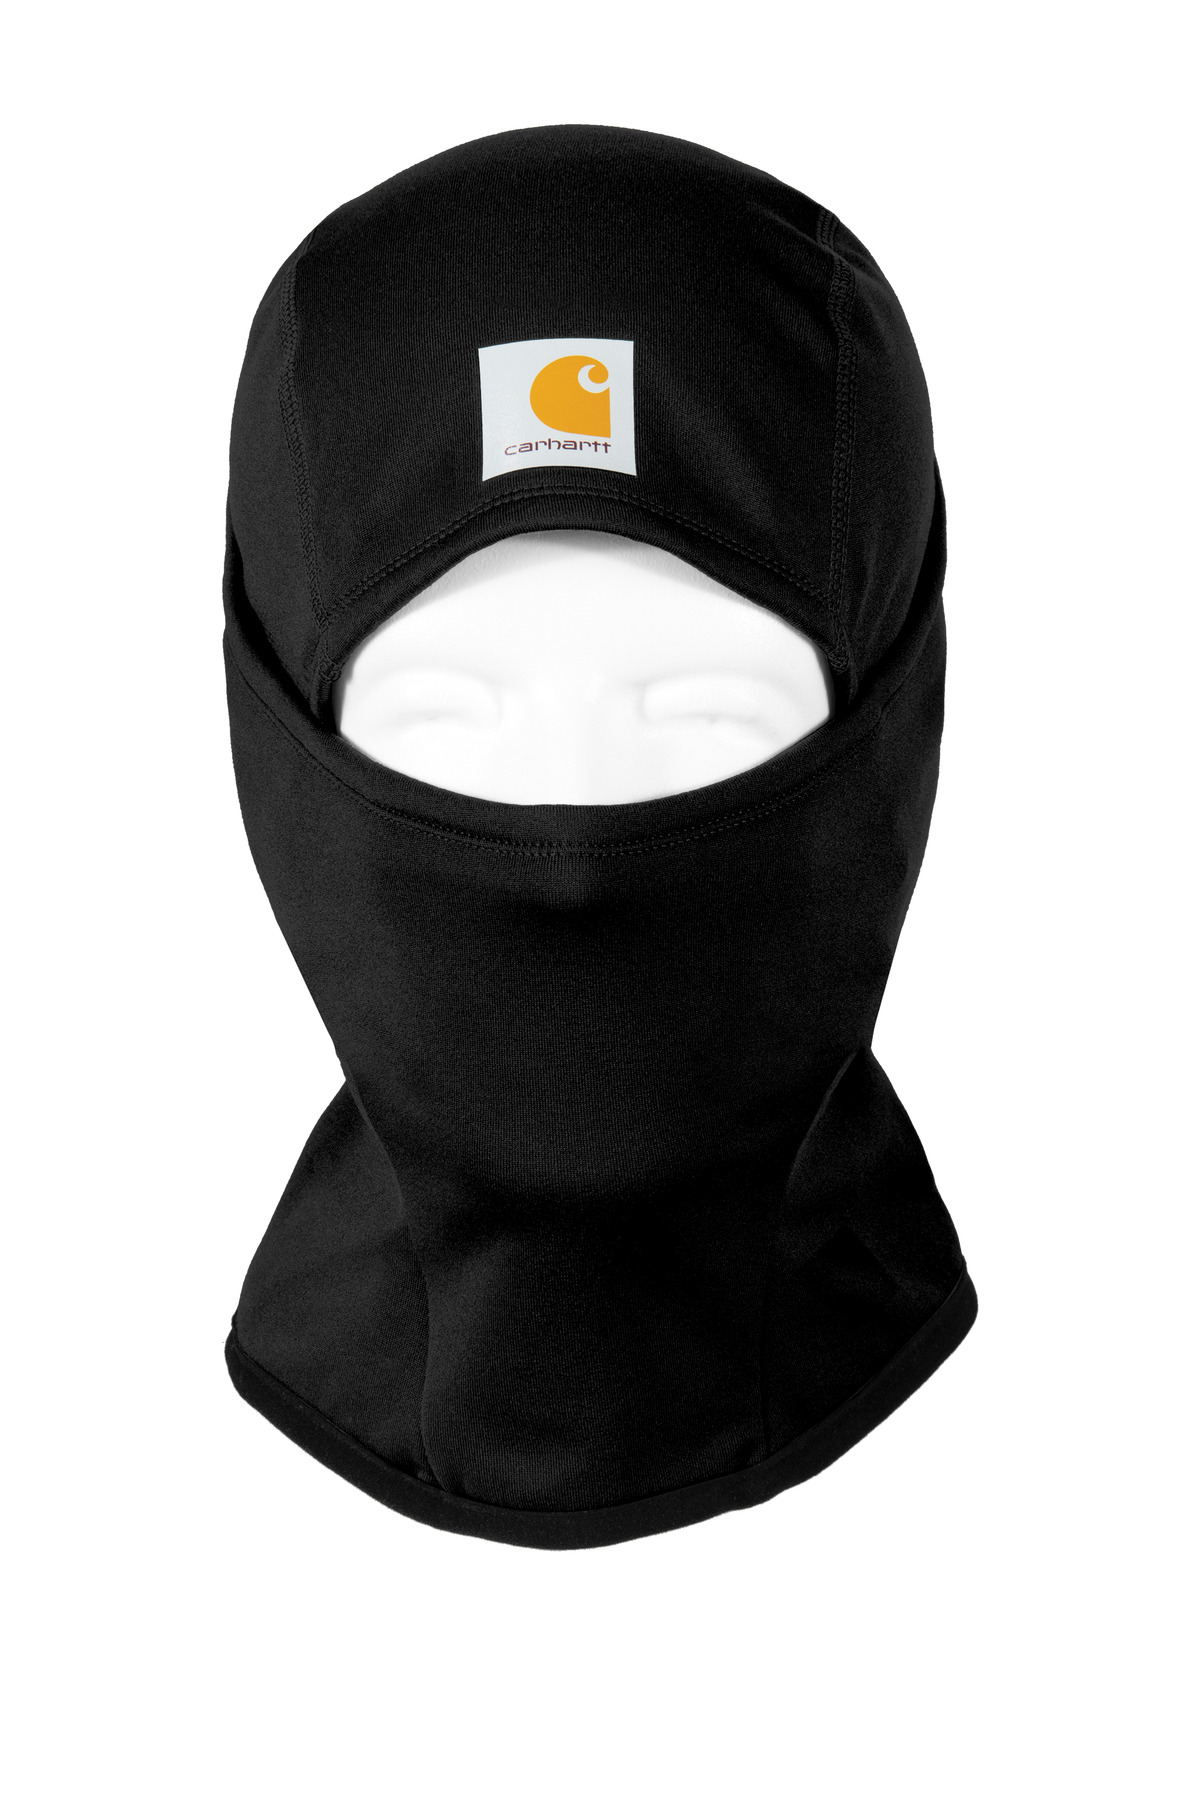 Carhartt Force Helmet-Liner Mask. CTA267 - Unitex Direct